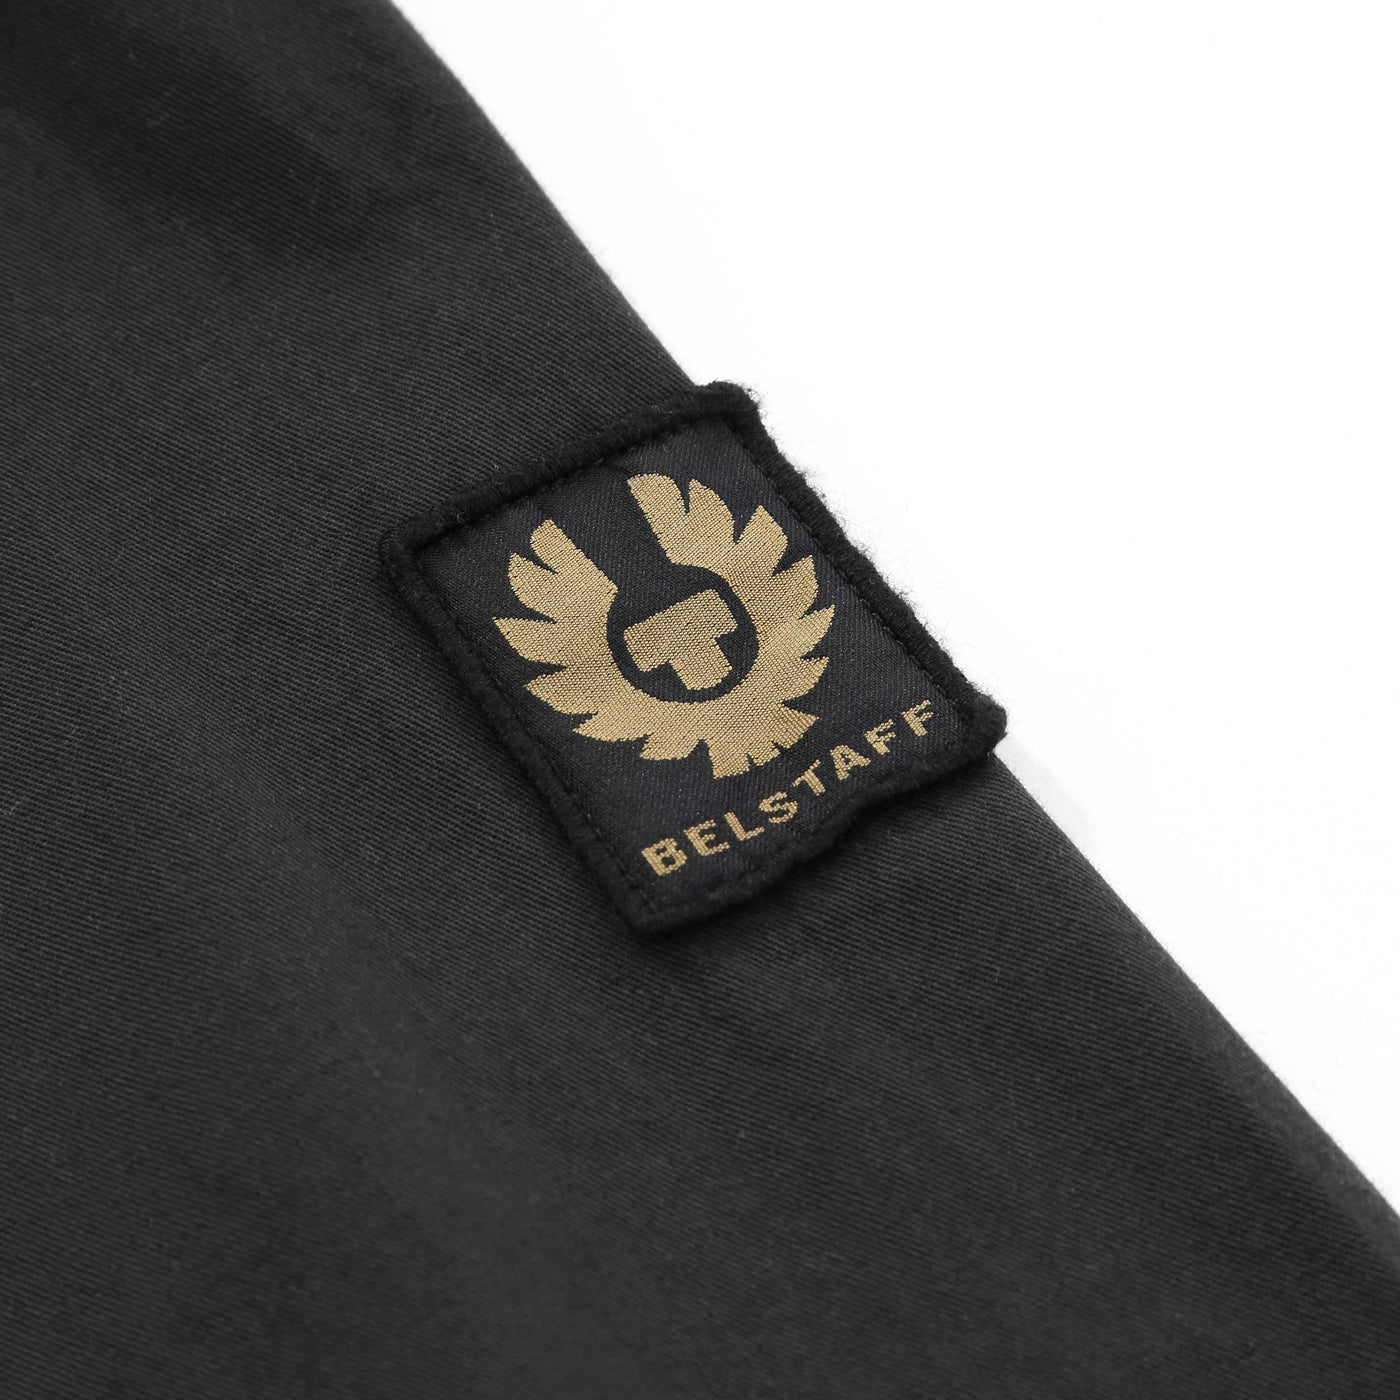 Belstaff Scale Shirt in Black Logo